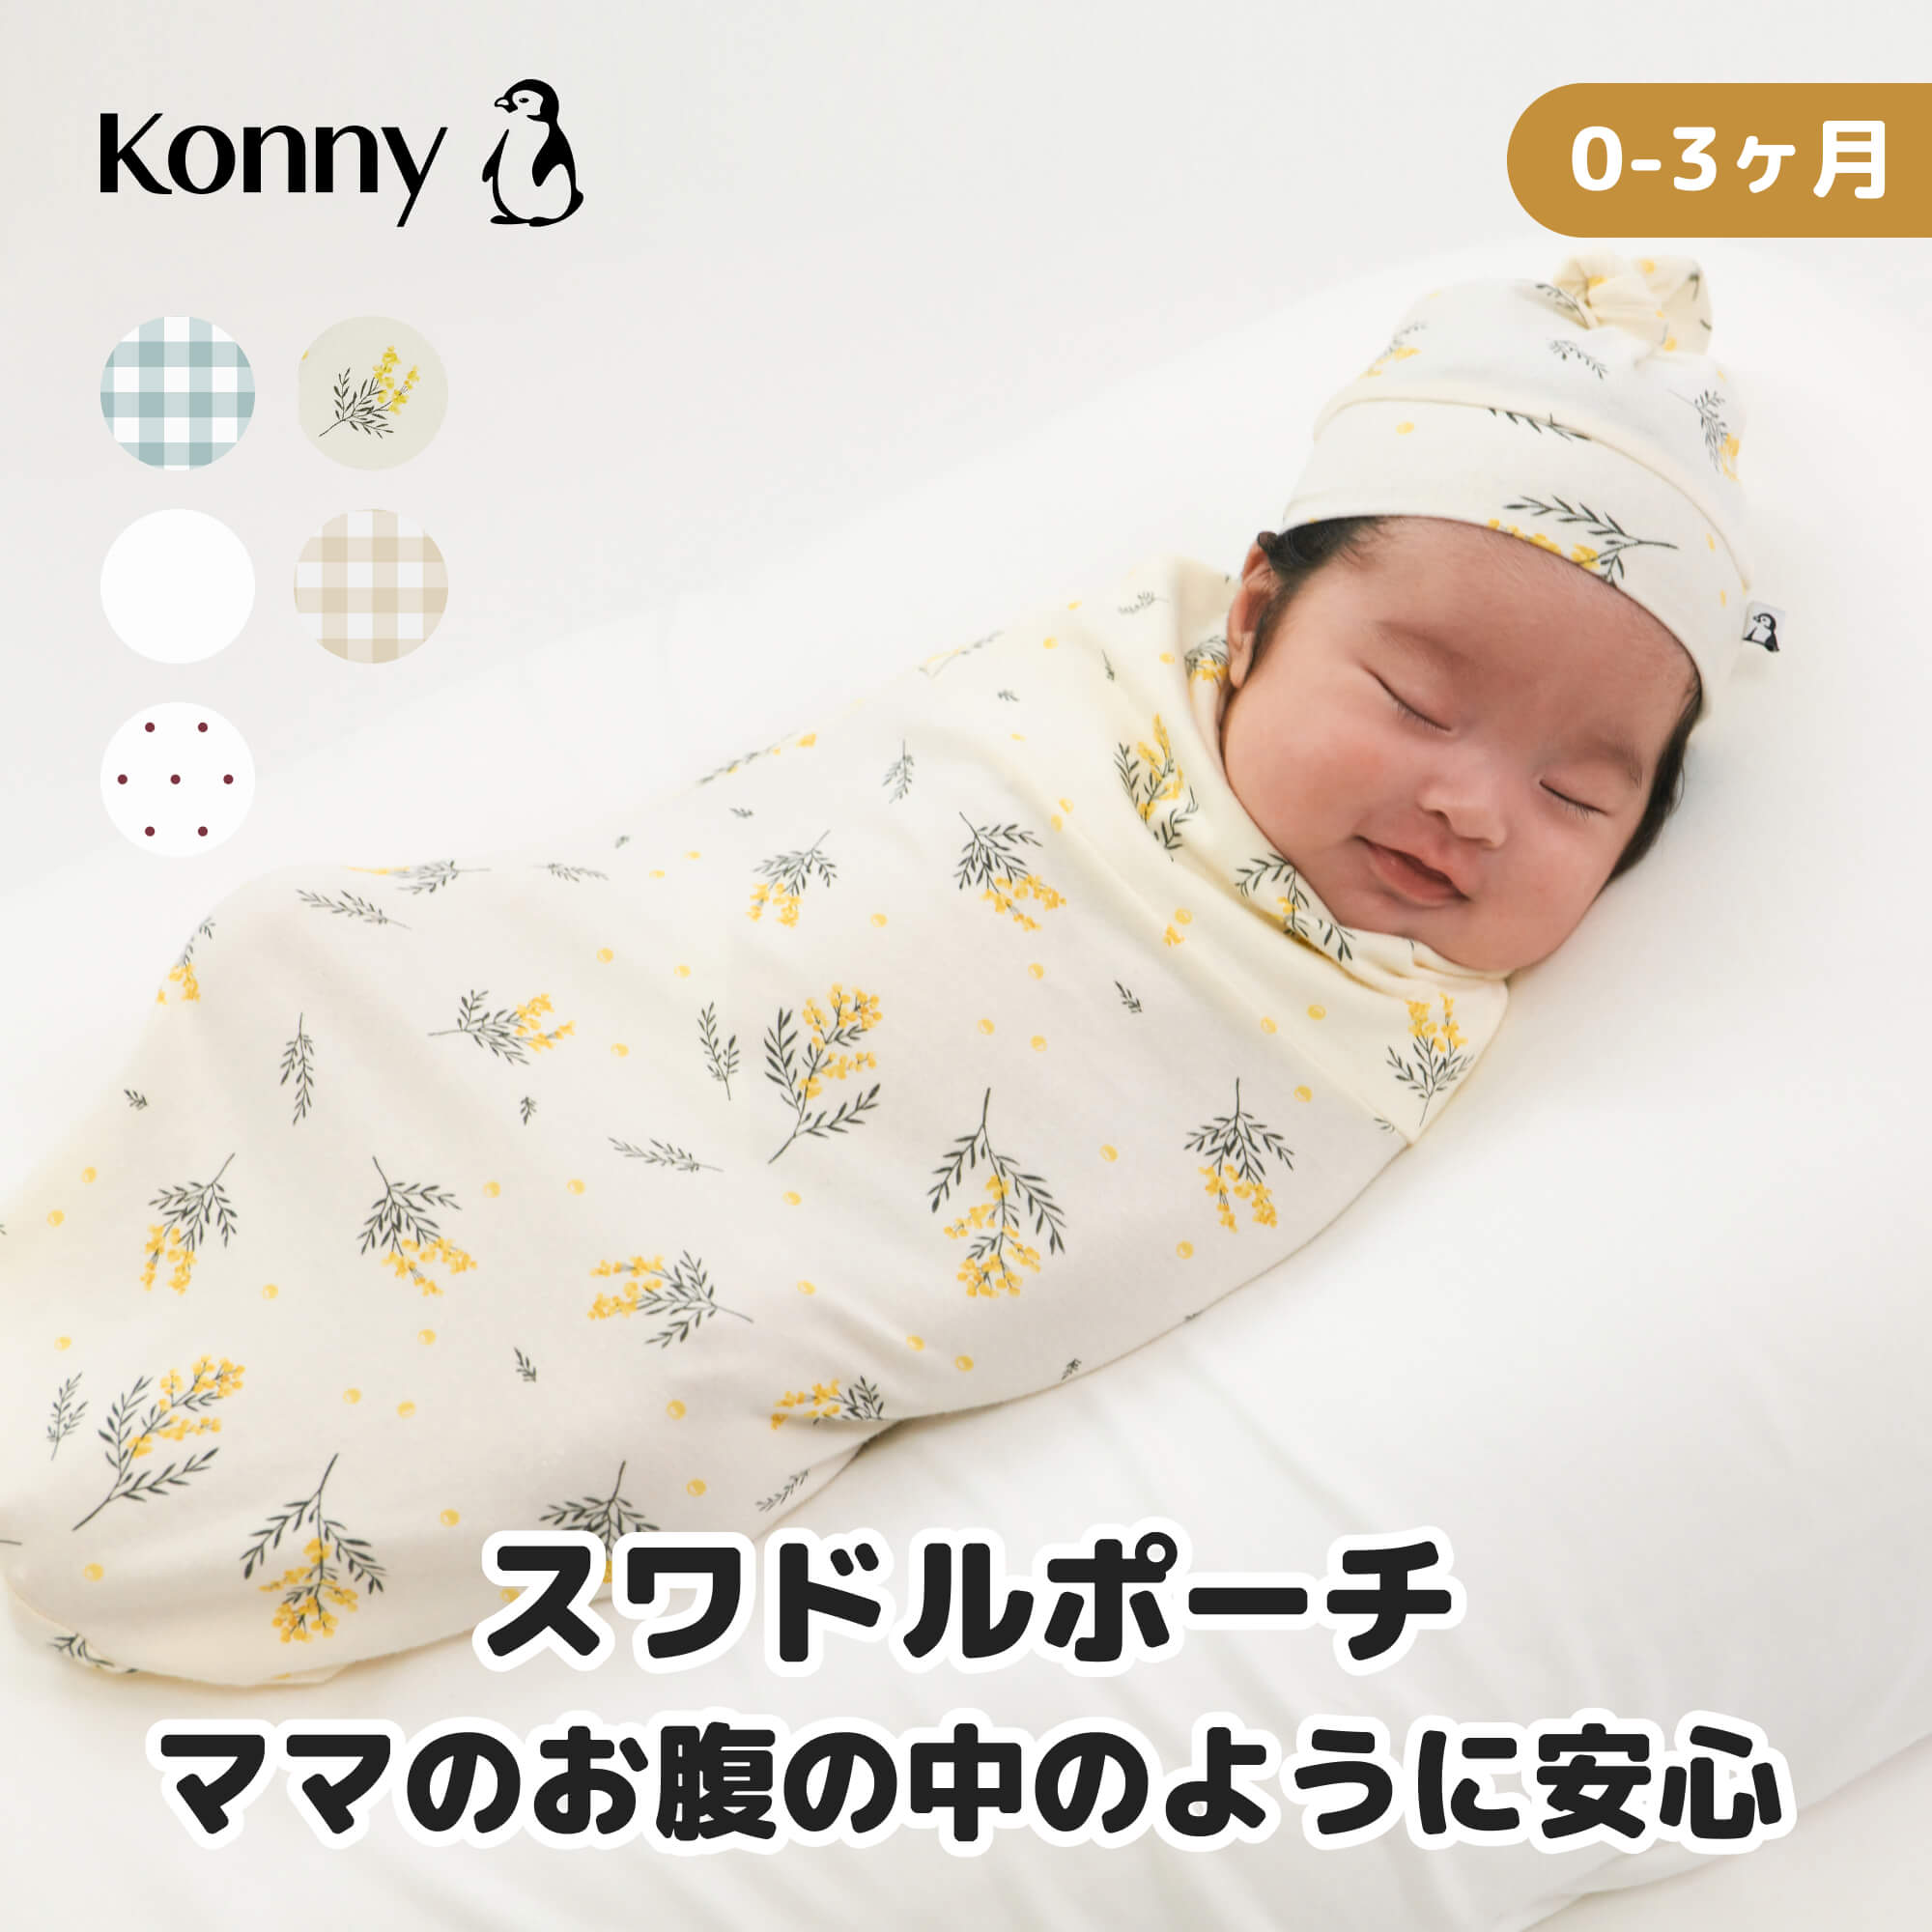 スワドル コニー 袋型 バンブー由来 柔らかい おくるみ モロー反射 ベビースワドル 夜泣き対策 背中スイッチ 安定感 出産祝い 新生児 0~3ヶ月 寝かしつけ プレゼント ねんね ネントレ Konny ベビー 赤ちゃん